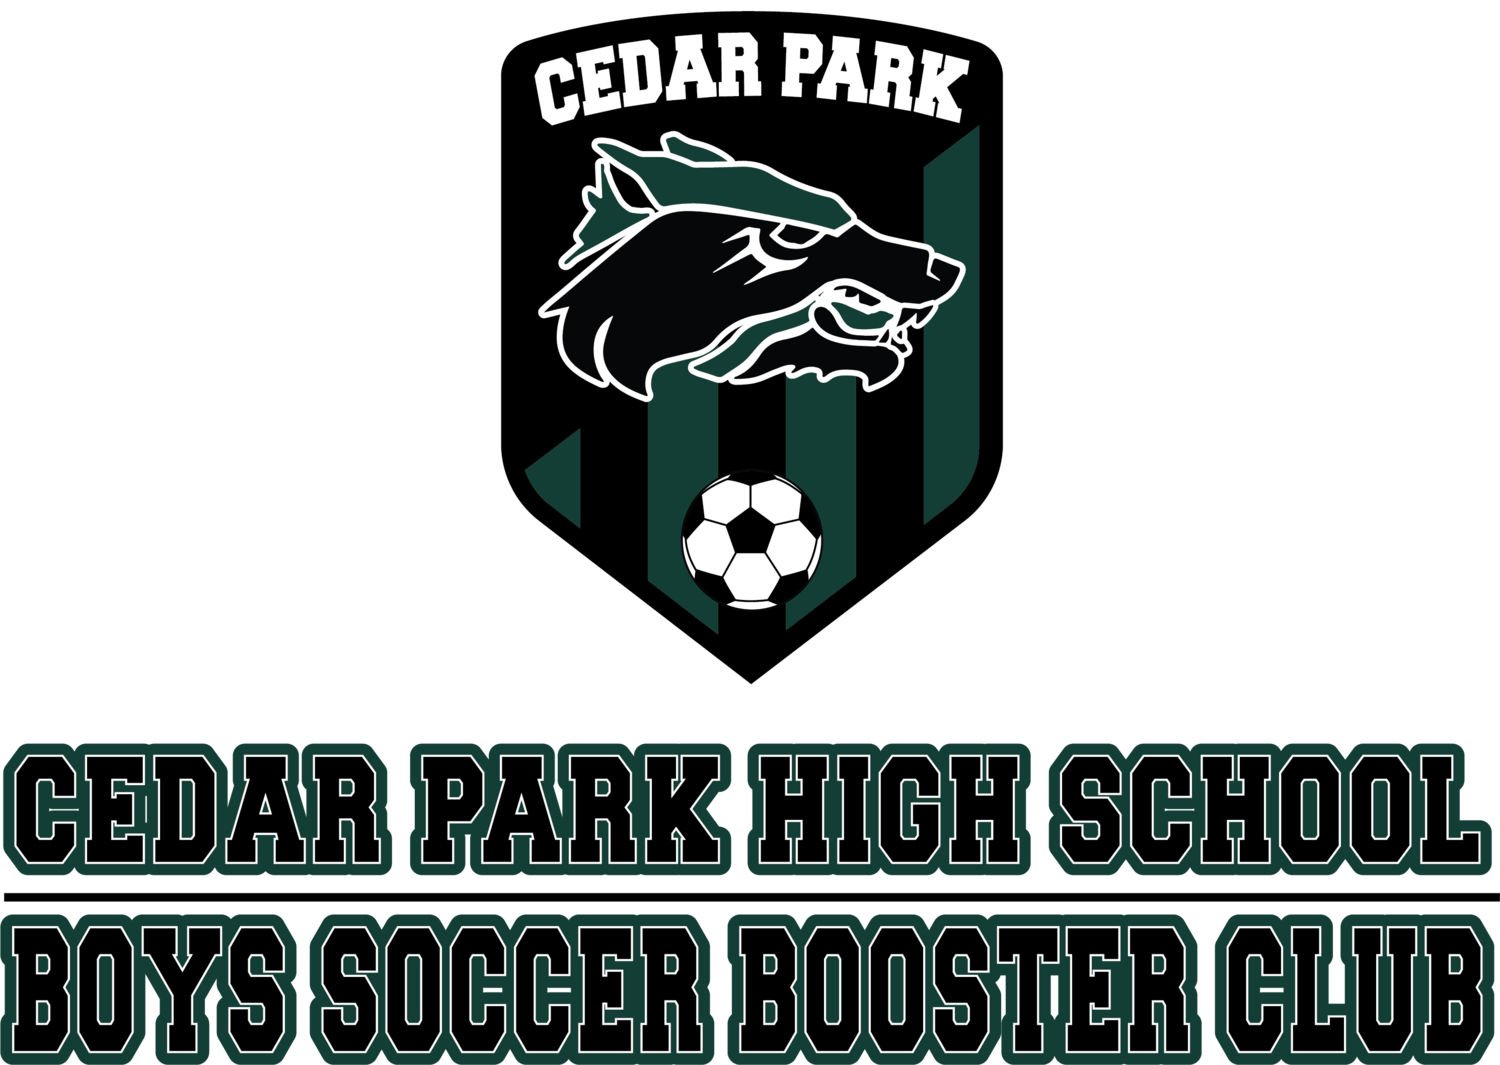 Cedar Park High School Boys Soccer Booster Club